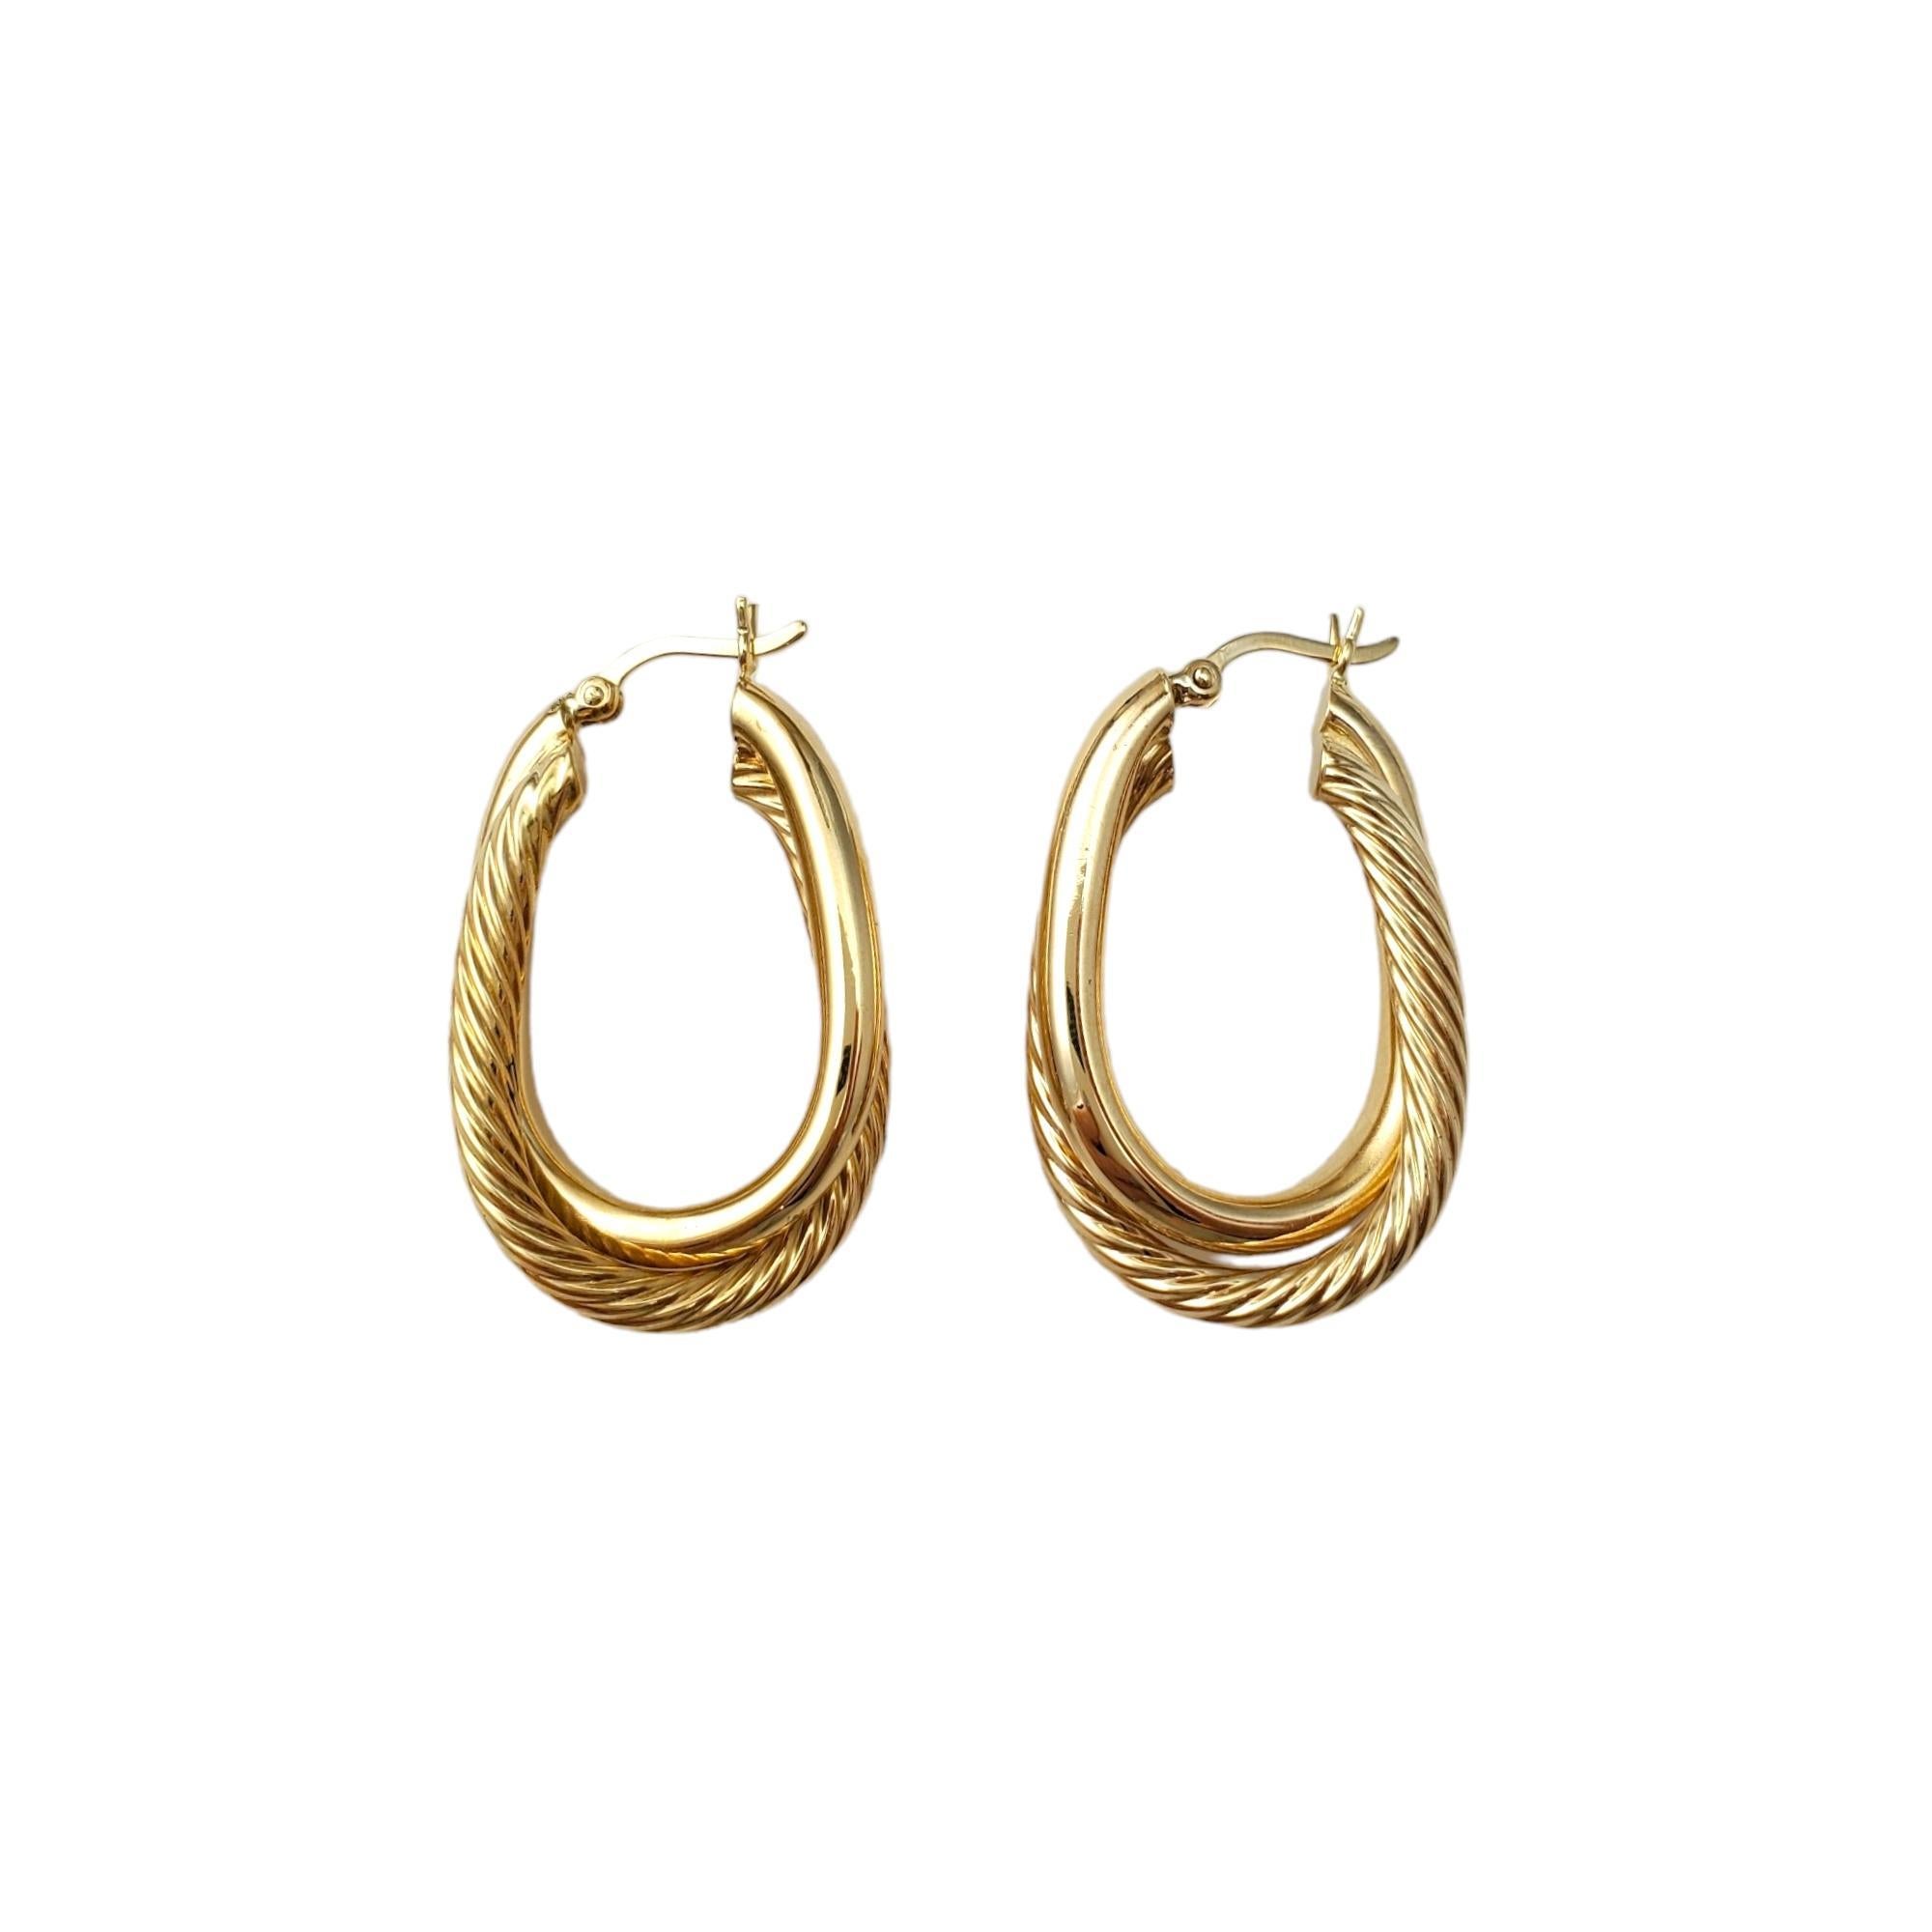 Vintage 14K Gelbgold Double Hoop Ohrringe -

Dieser doppelte Ohrring besteht aus zwei wunderschönen ineinander verschlungenen Ringen. 

Ein Ring ist aus glattem Gold, der andere ist ein Kabel/Seil-Design. Oval geformt

Größe: 31,7 mm x 7,1 mm x 3,2